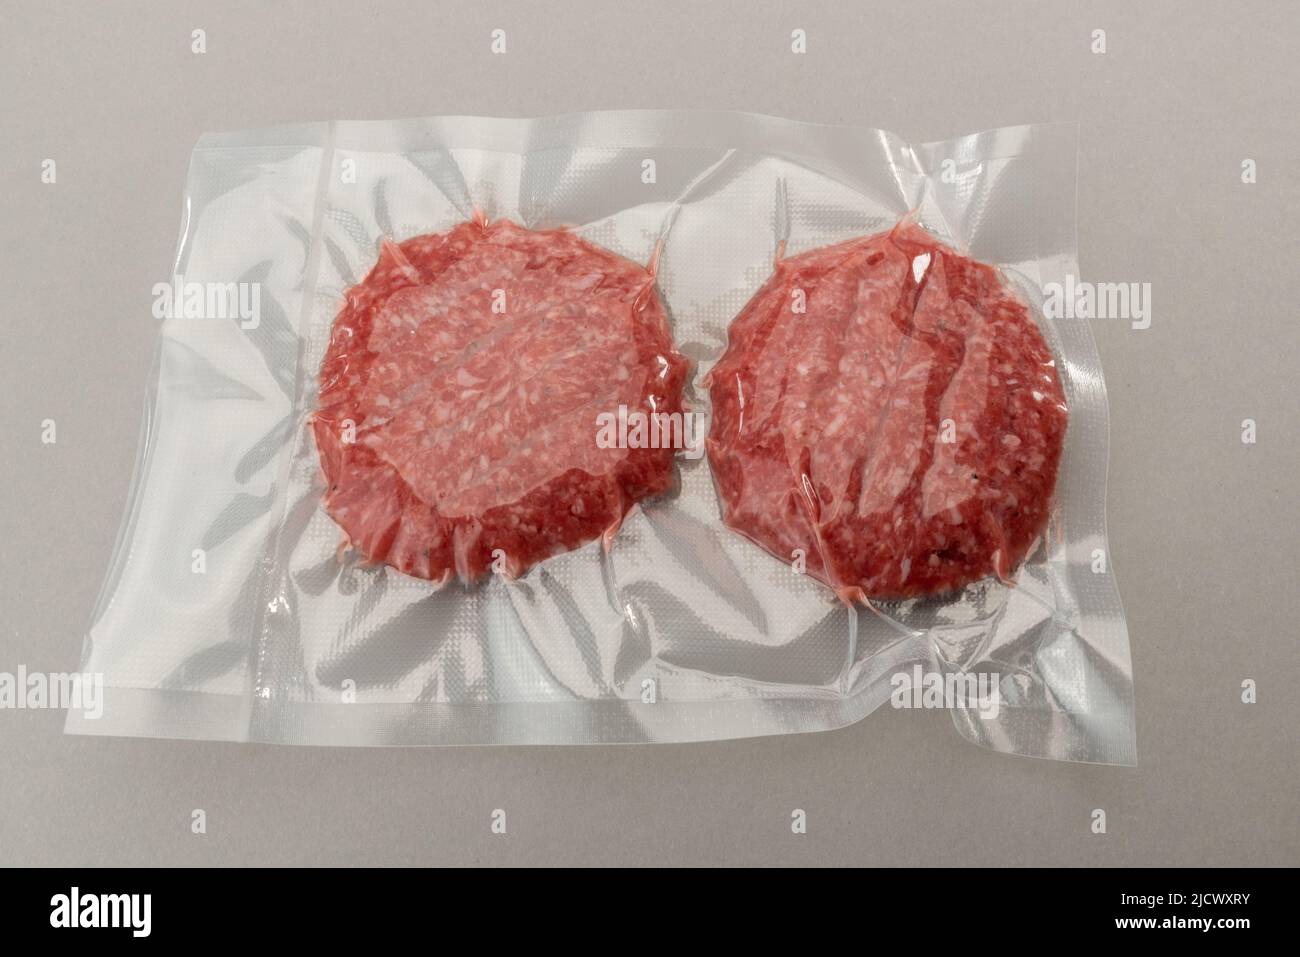 Hamburguesa de carne para hamburguesa en envasado al vacío sellado para cocinar al vacío aislado sobre fondo gris Foto de stock